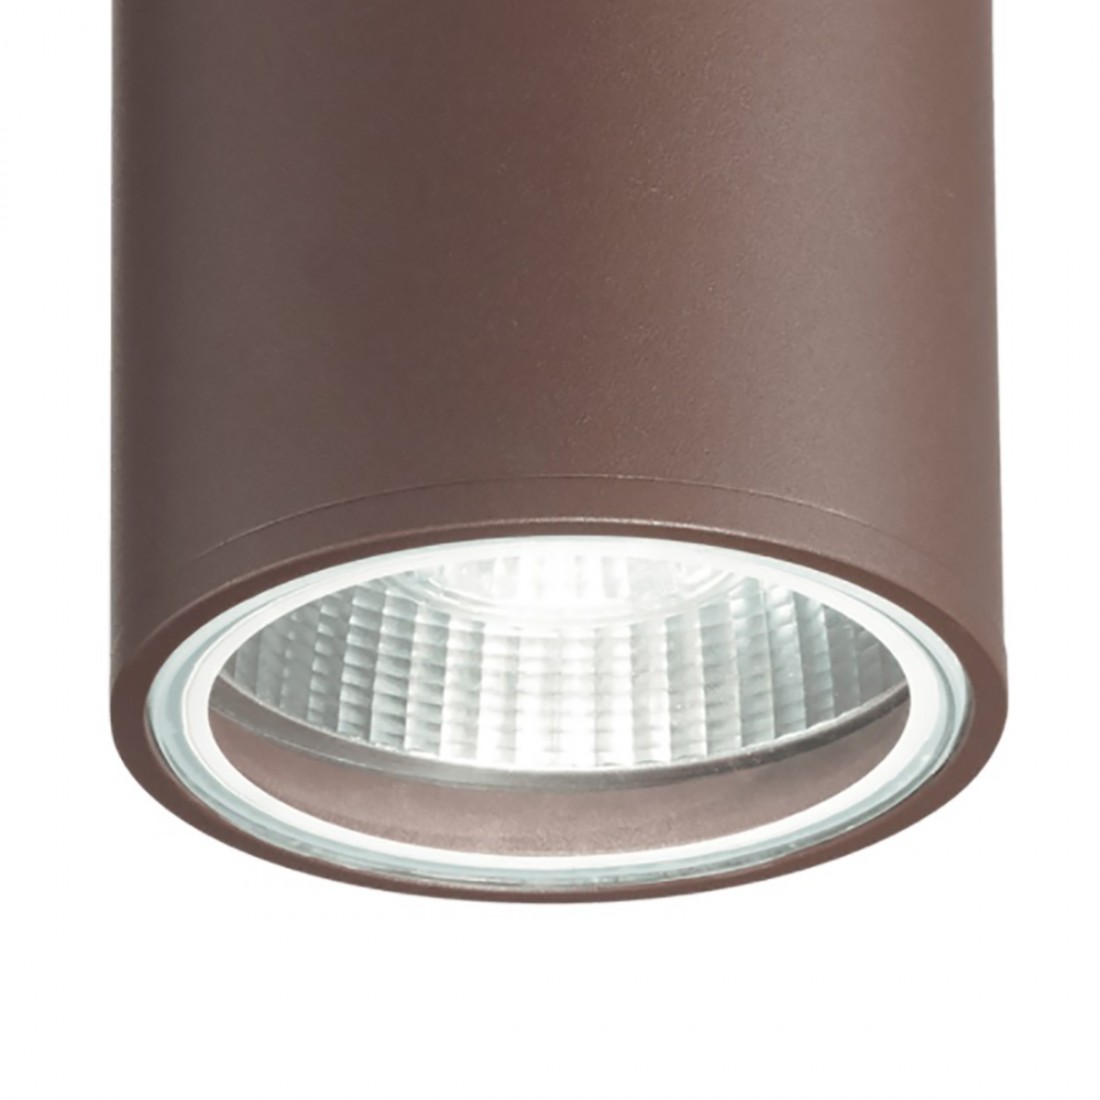 Außenzylinder aus Aluminium mit Licht von oben nach unten, zwei Lichter, GU10-LED.